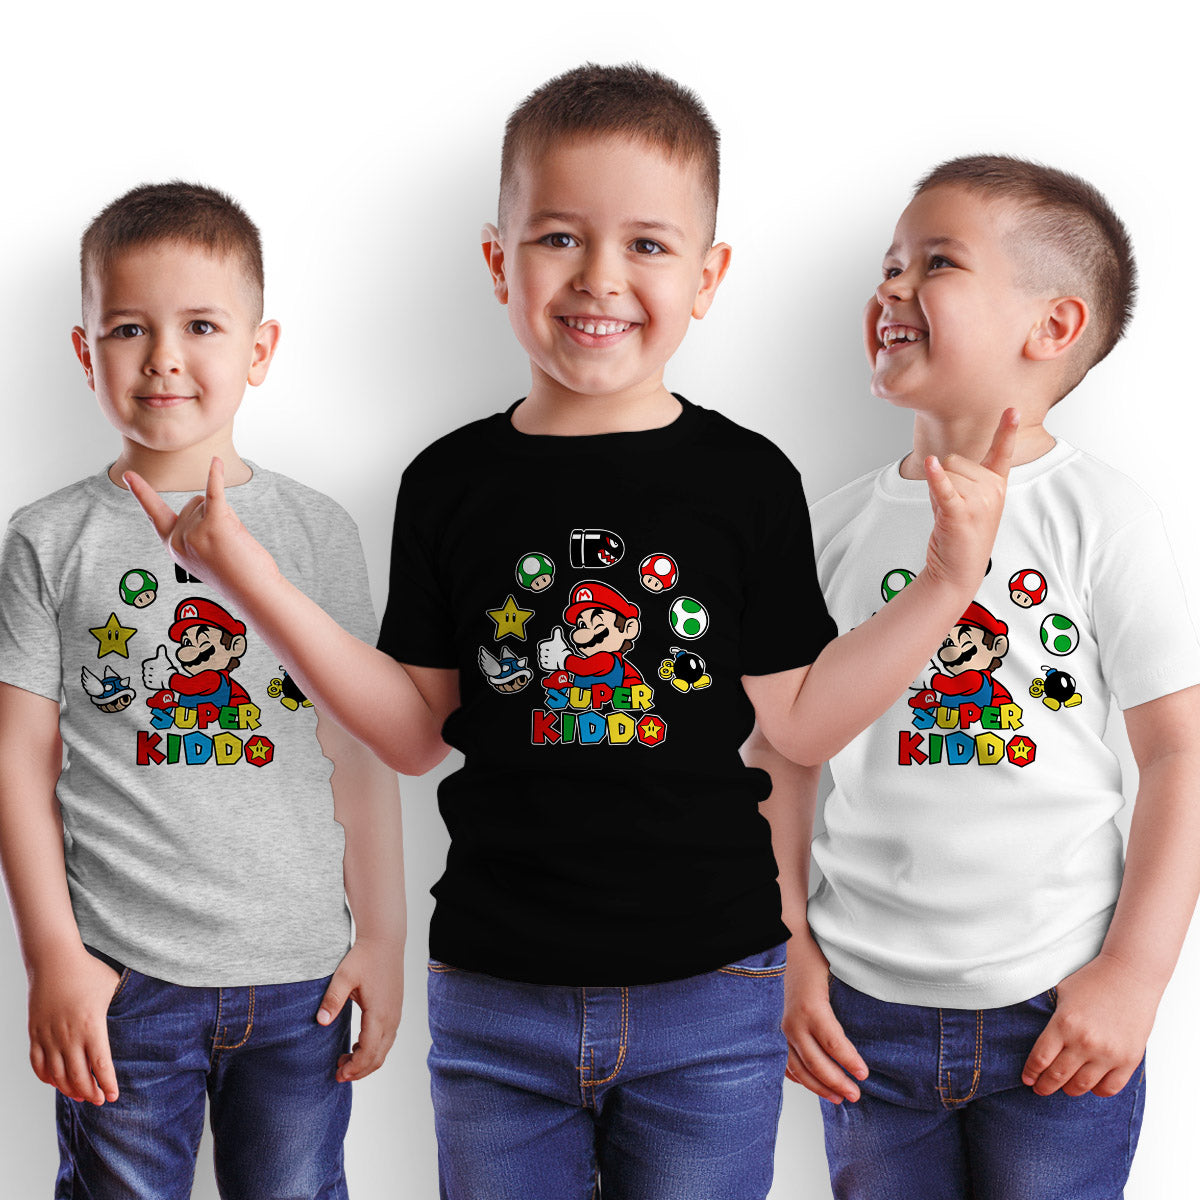 Super Kiddo T-shirt Mario Birthday Kids Custom Gaming Birthday Kids T-shirt